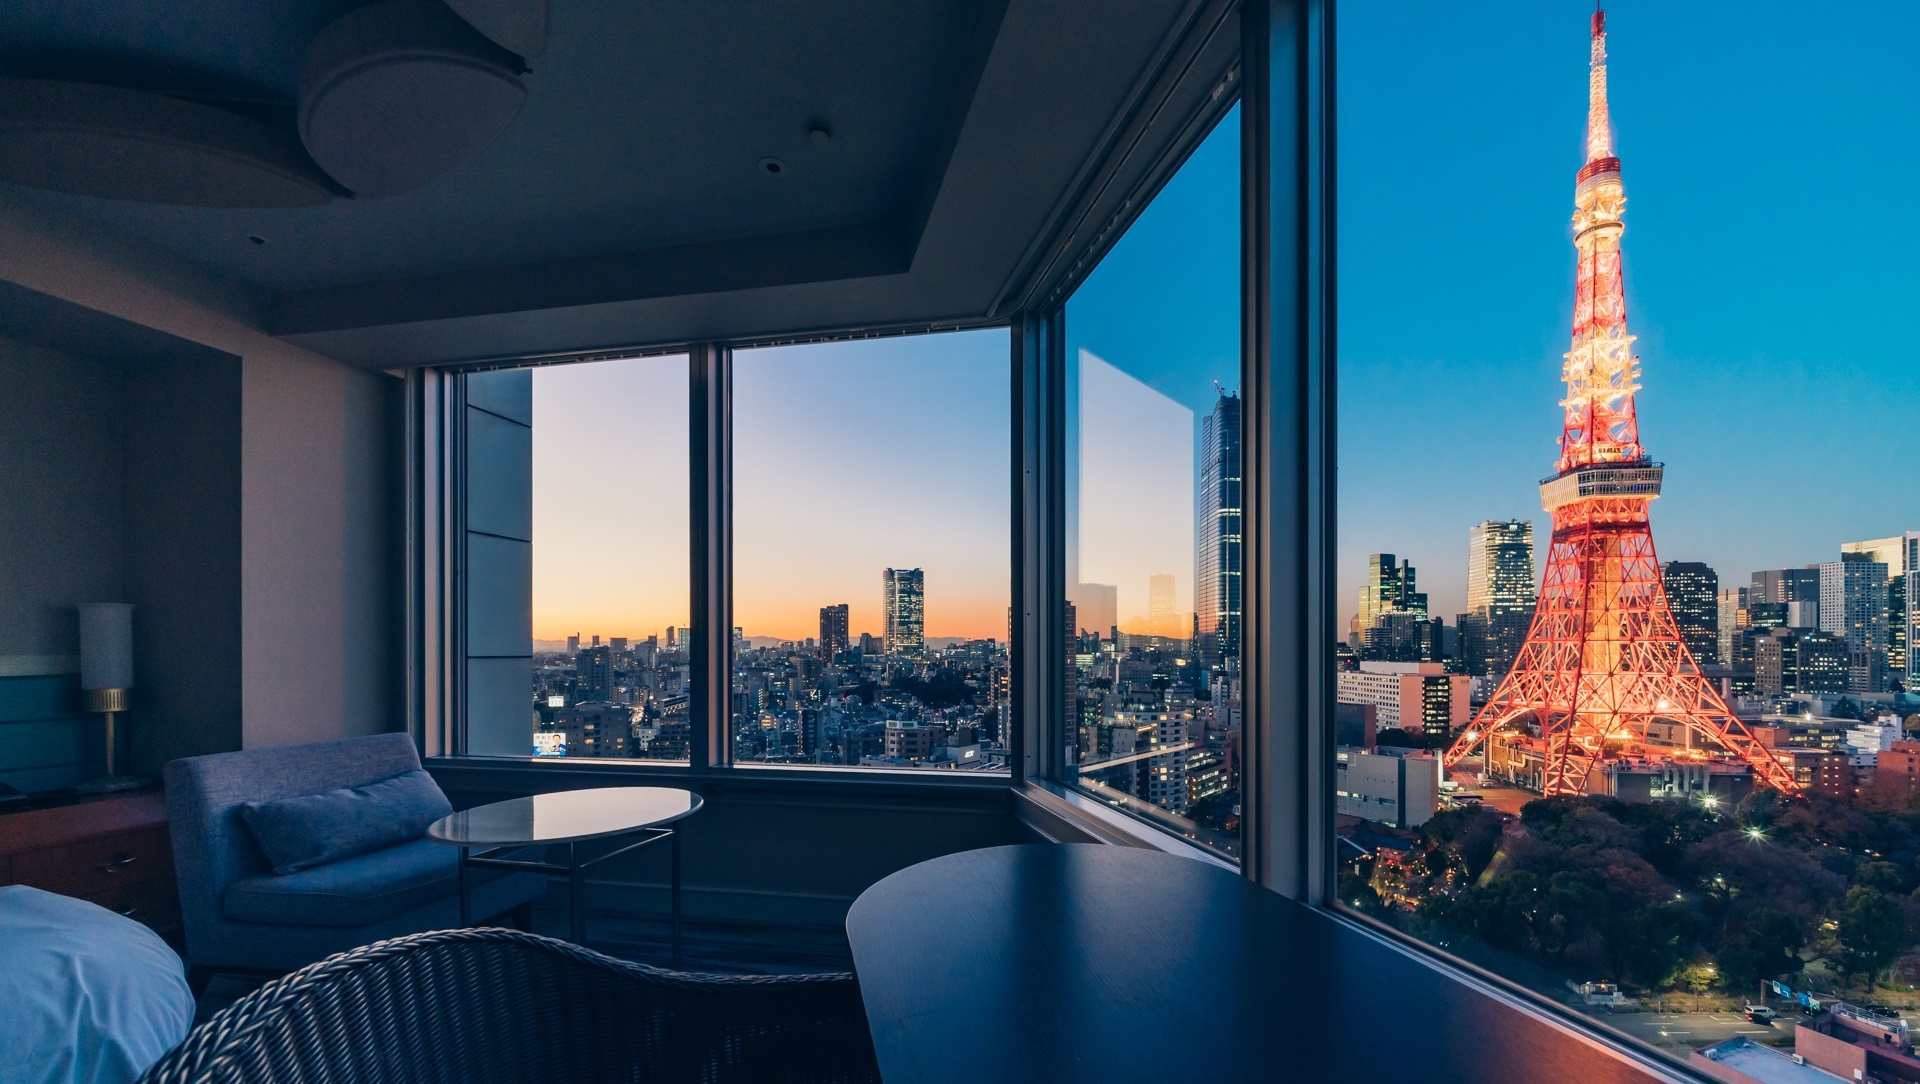 منظره پانوراما هتل پرینس از برج مخابراتی توکیو